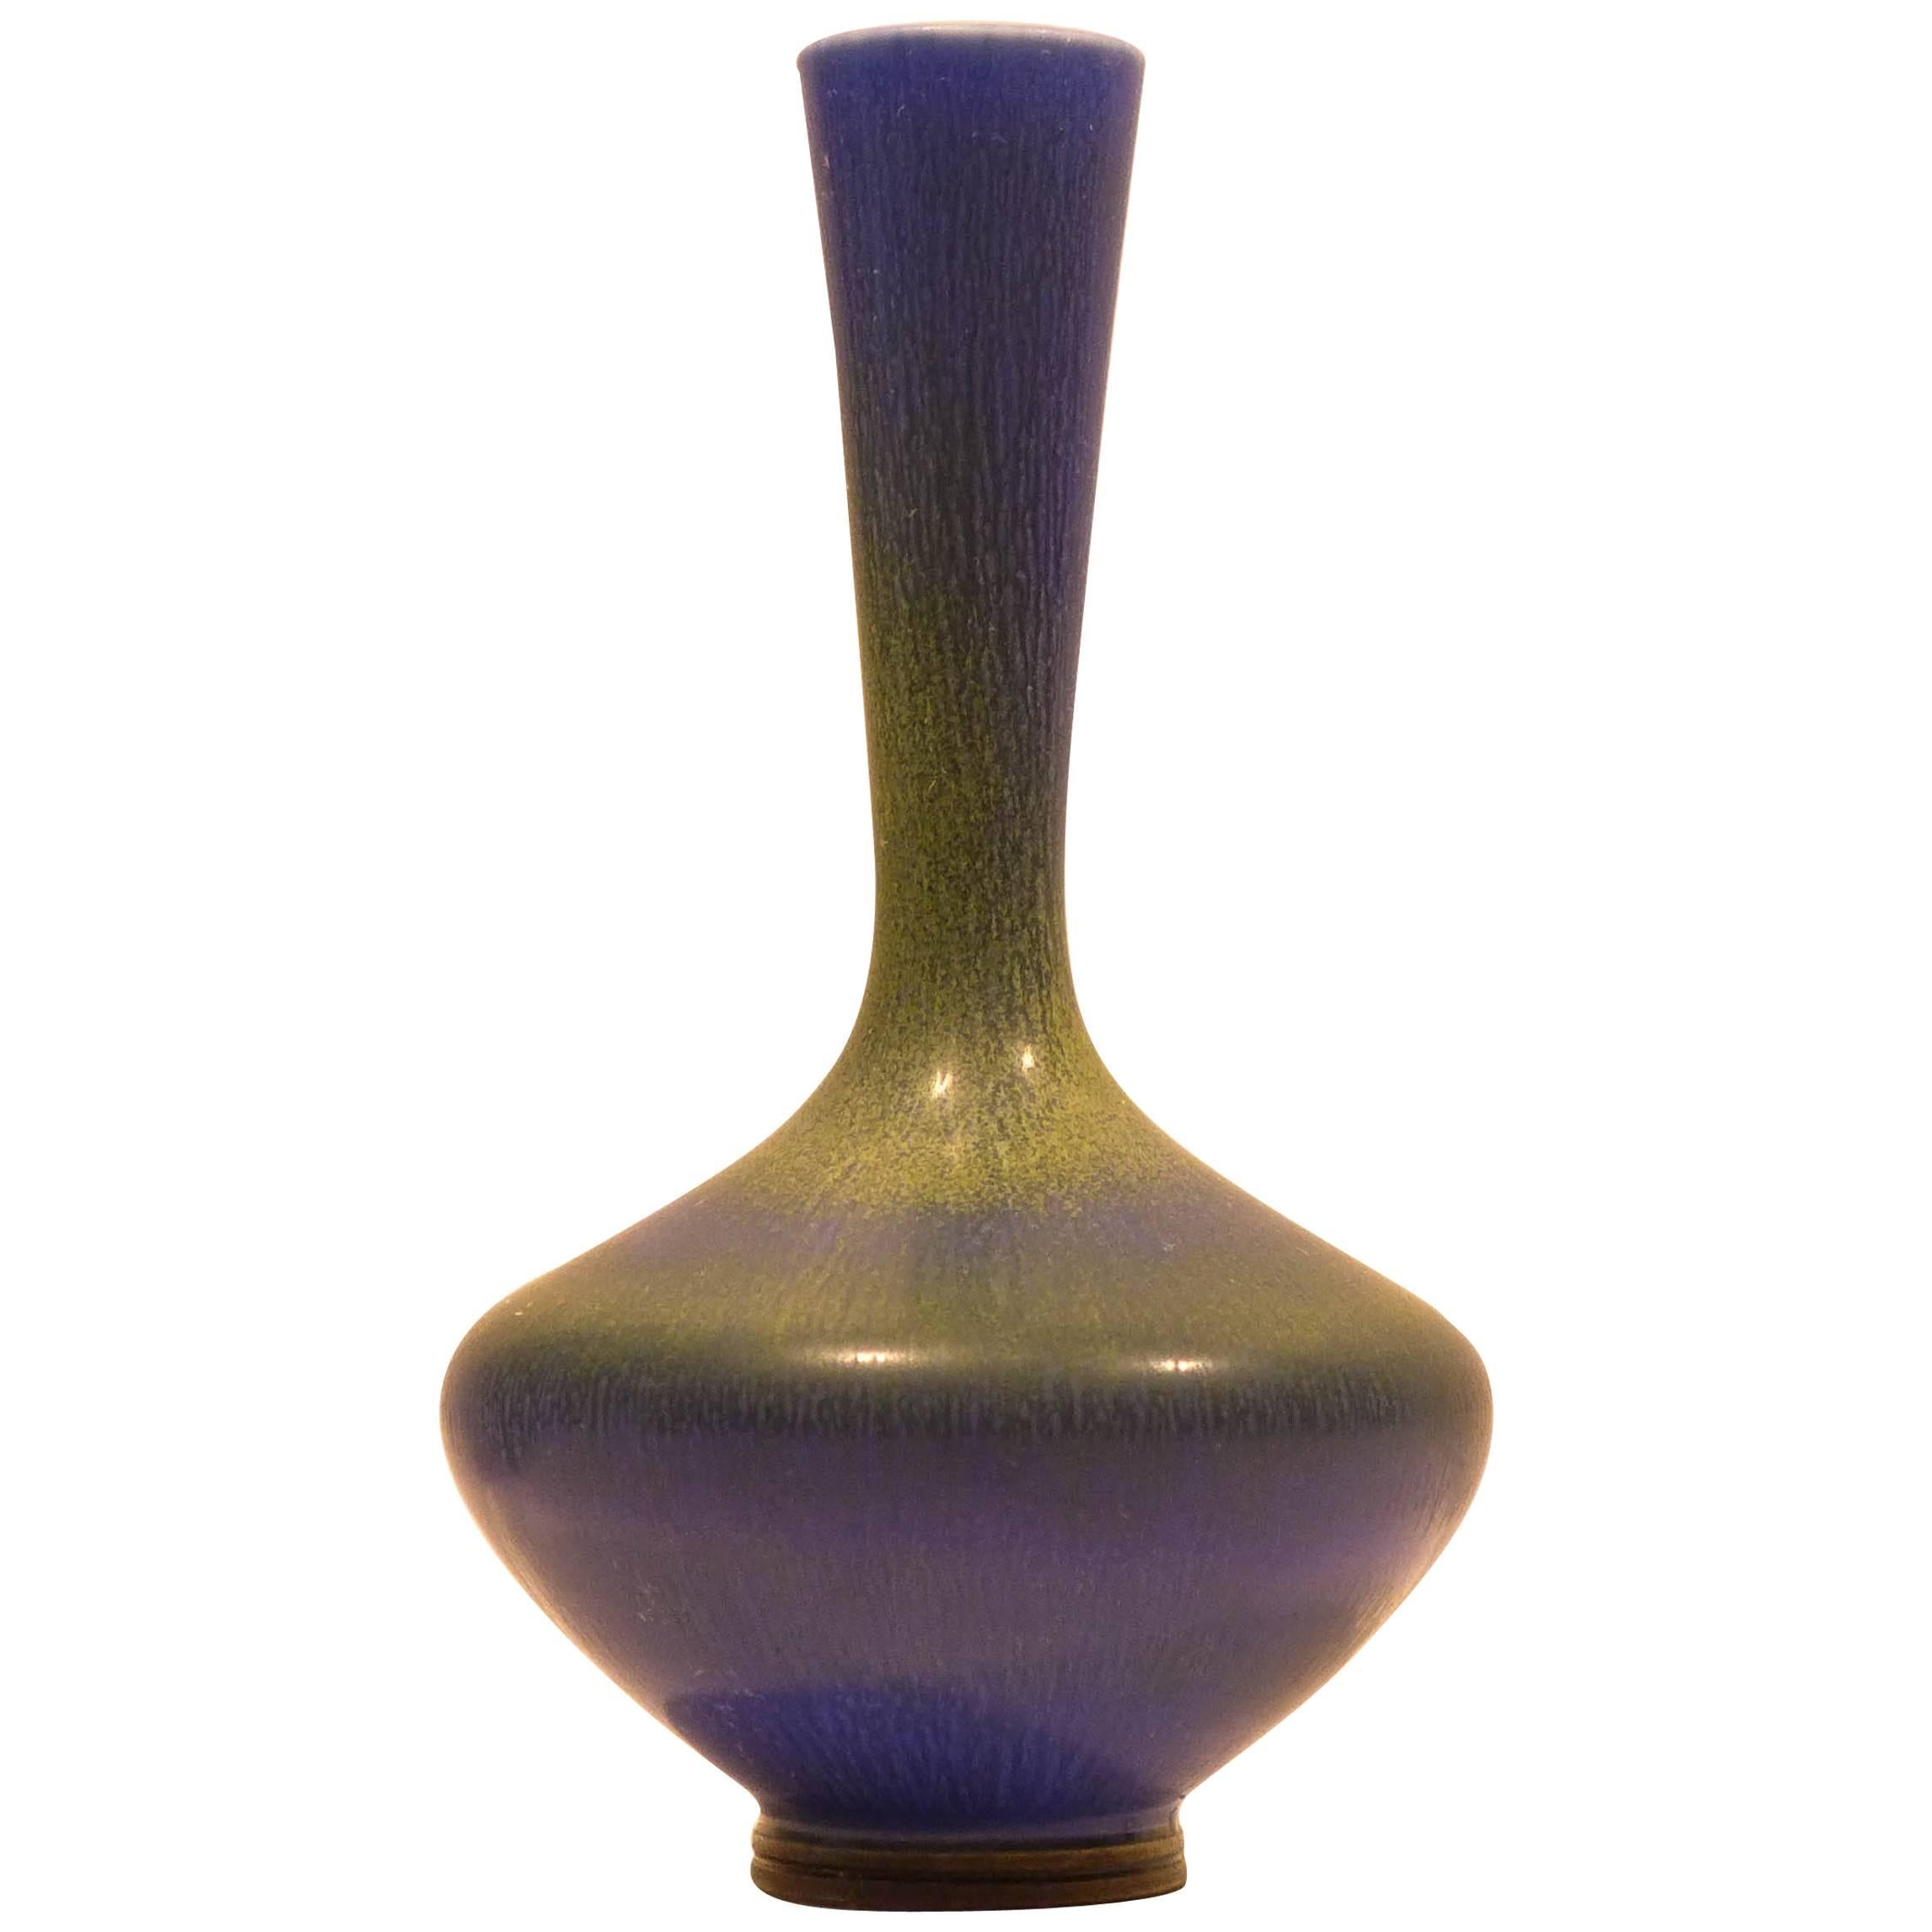 Berndt Friberg Vase with Vivid Blue-Green Glaze